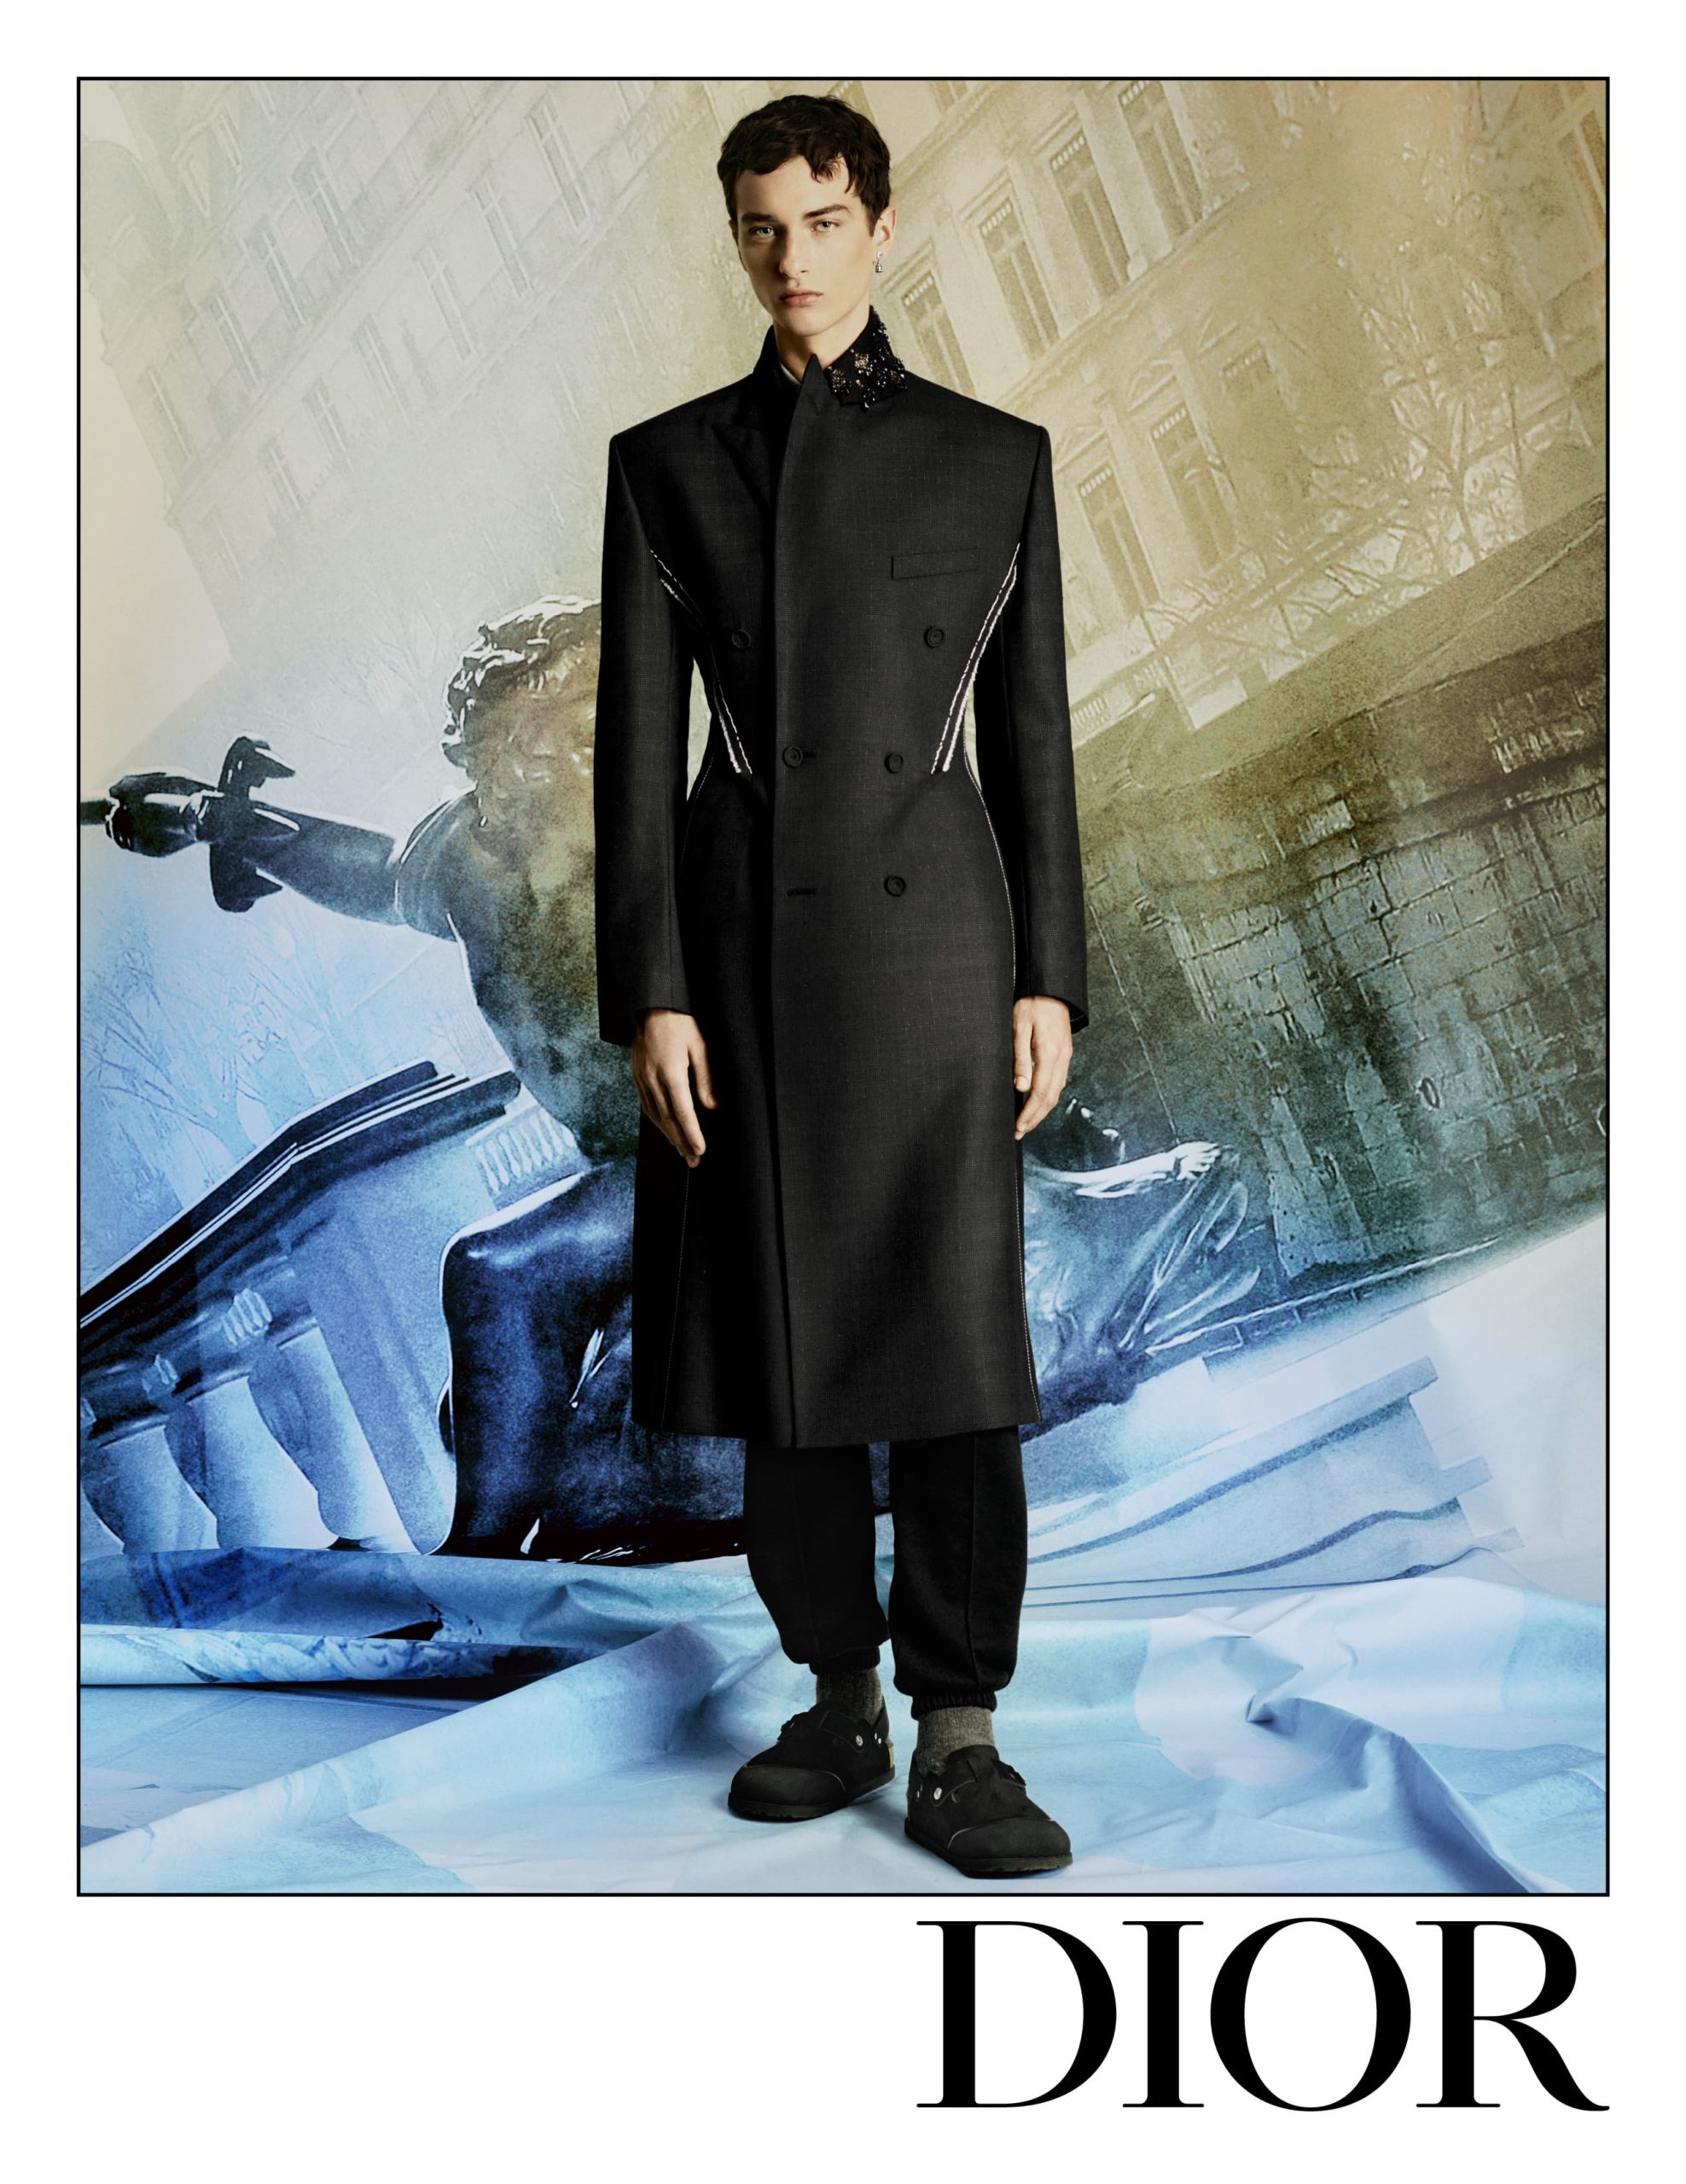 Dior Men's Fall 2022 Fashion Ad Campaign